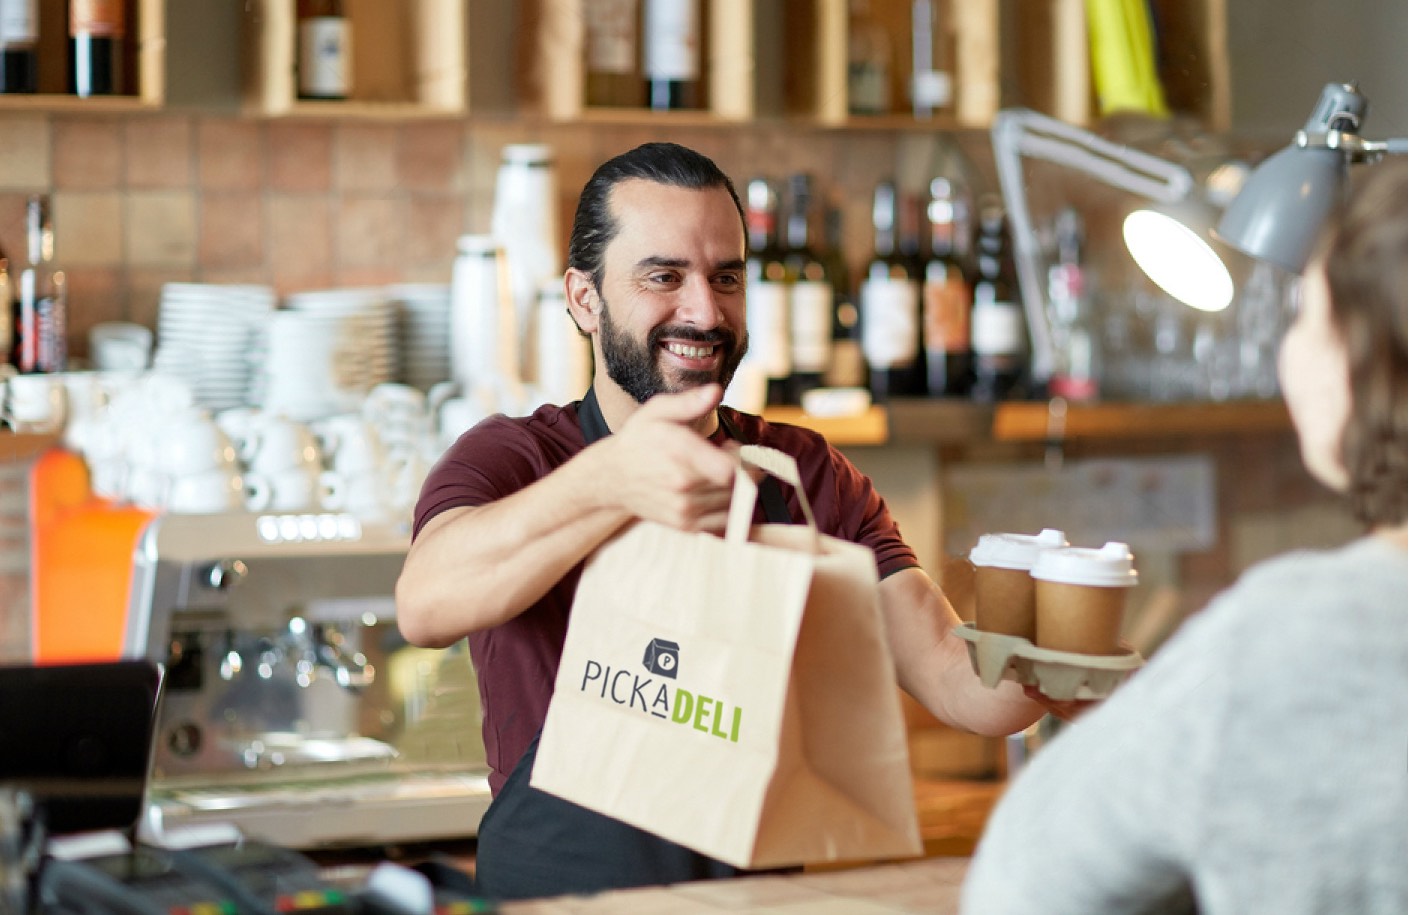 PickaDeli quiere convertirse en el marketplace líder en comida para llevar de Madrid.